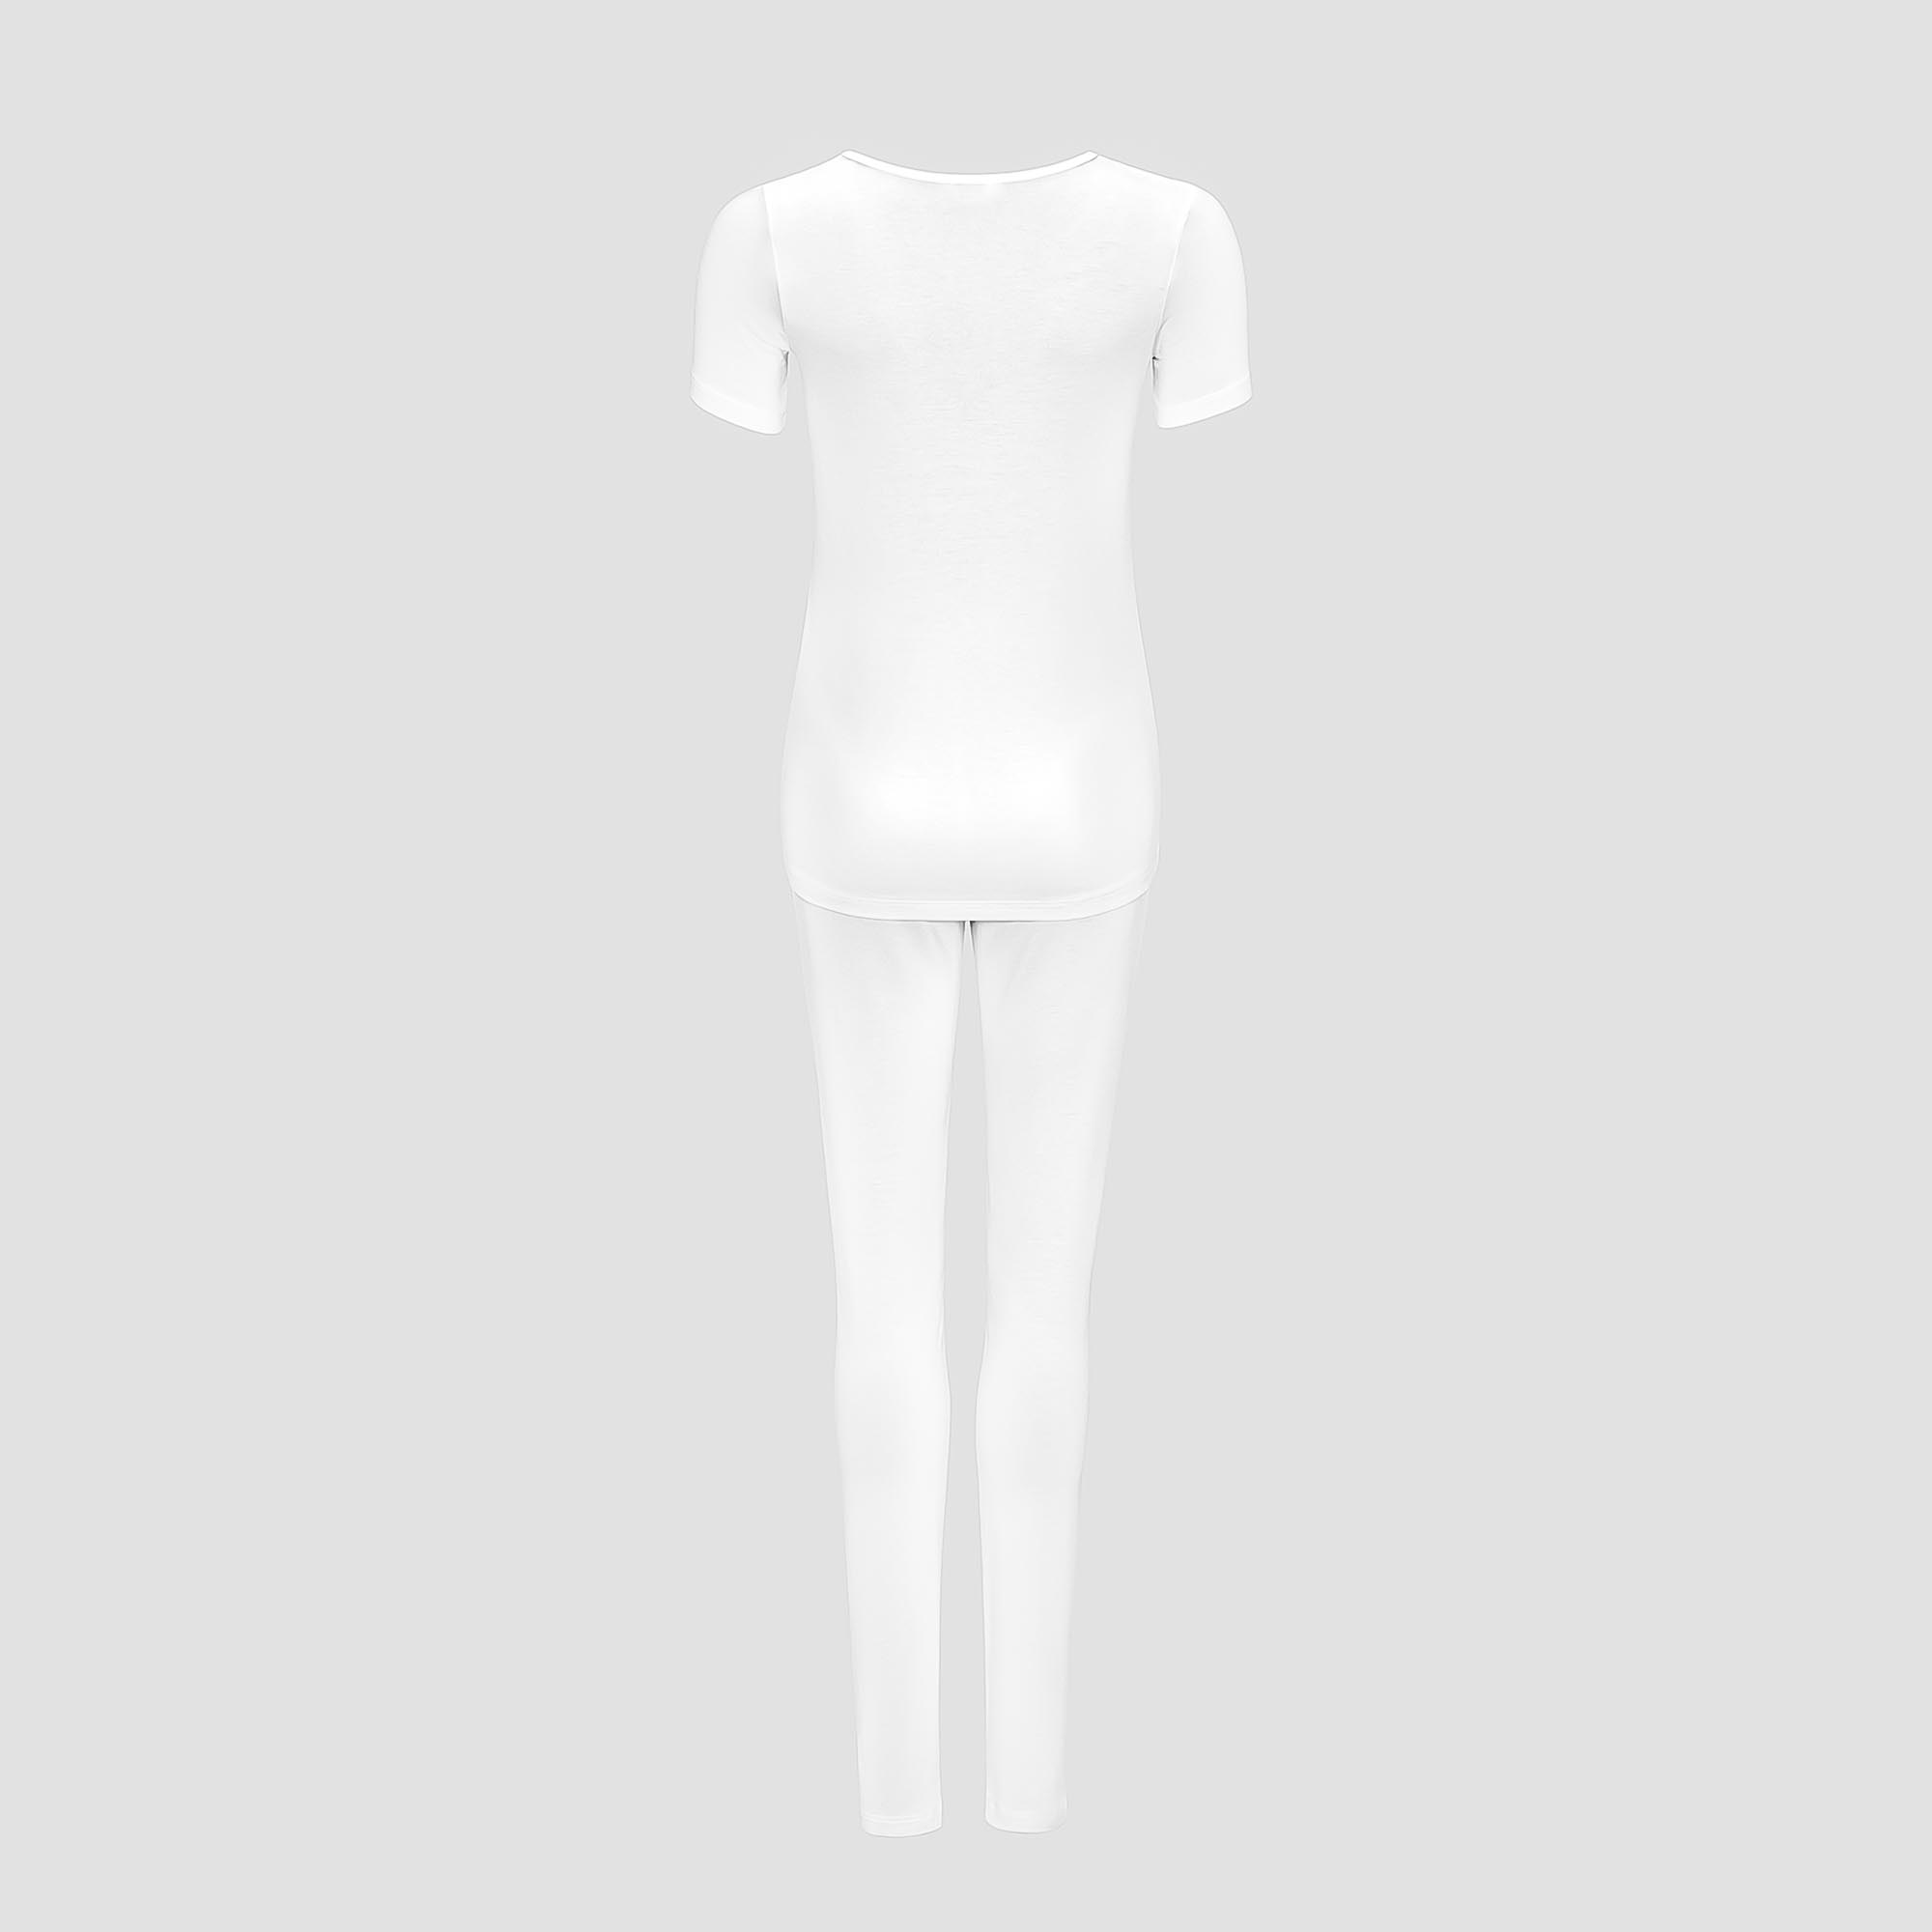 Пижама Togas Ингелла белая женская L(48) 2 предмета, цвет белый, размер L(48) - фото 3